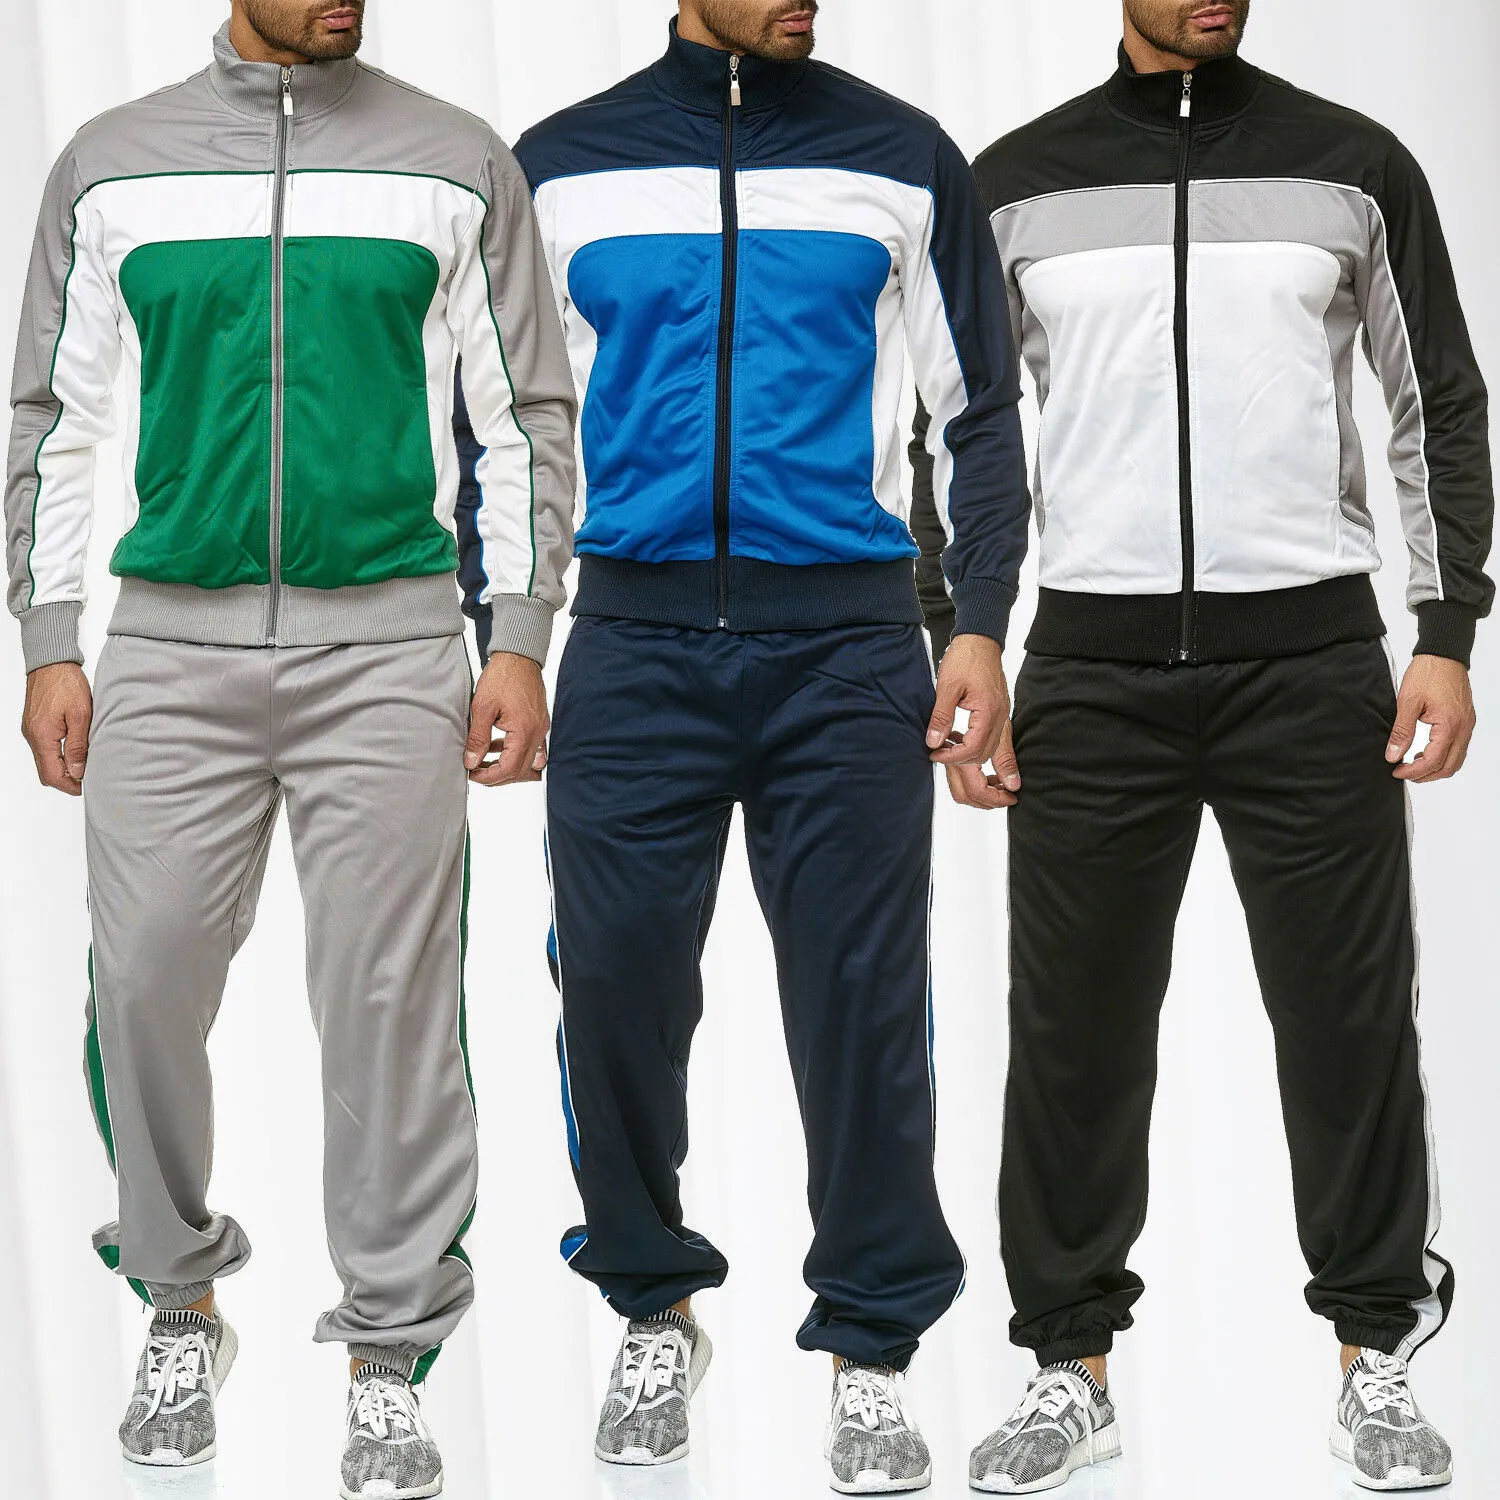 メンズ2020秋新着長袖スウェットスーツ男性スポーツのアクティブストライプパターンカジュアルファッション服熱い販売